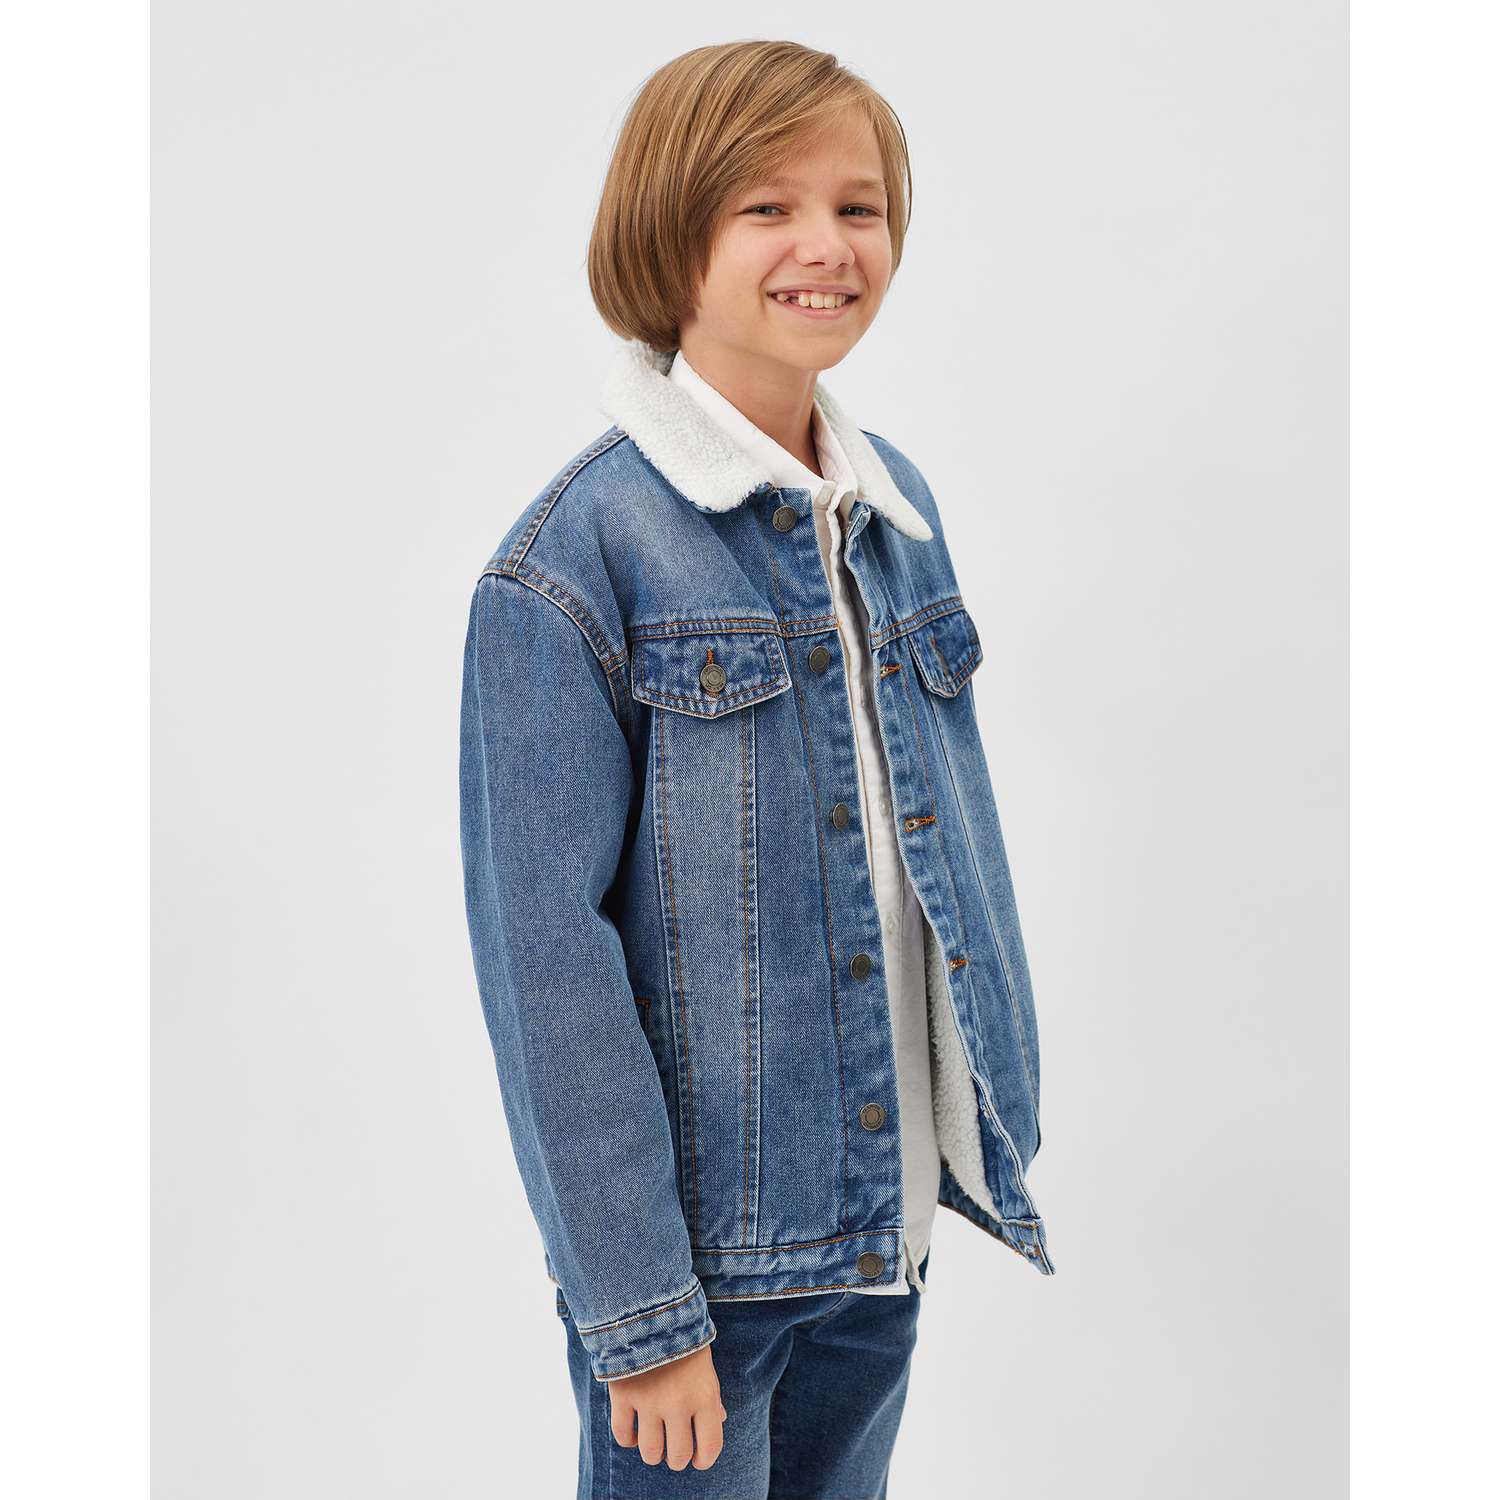 Продажа детских товаров для мальчиков и девочек - джинсовая куртка для мальчика